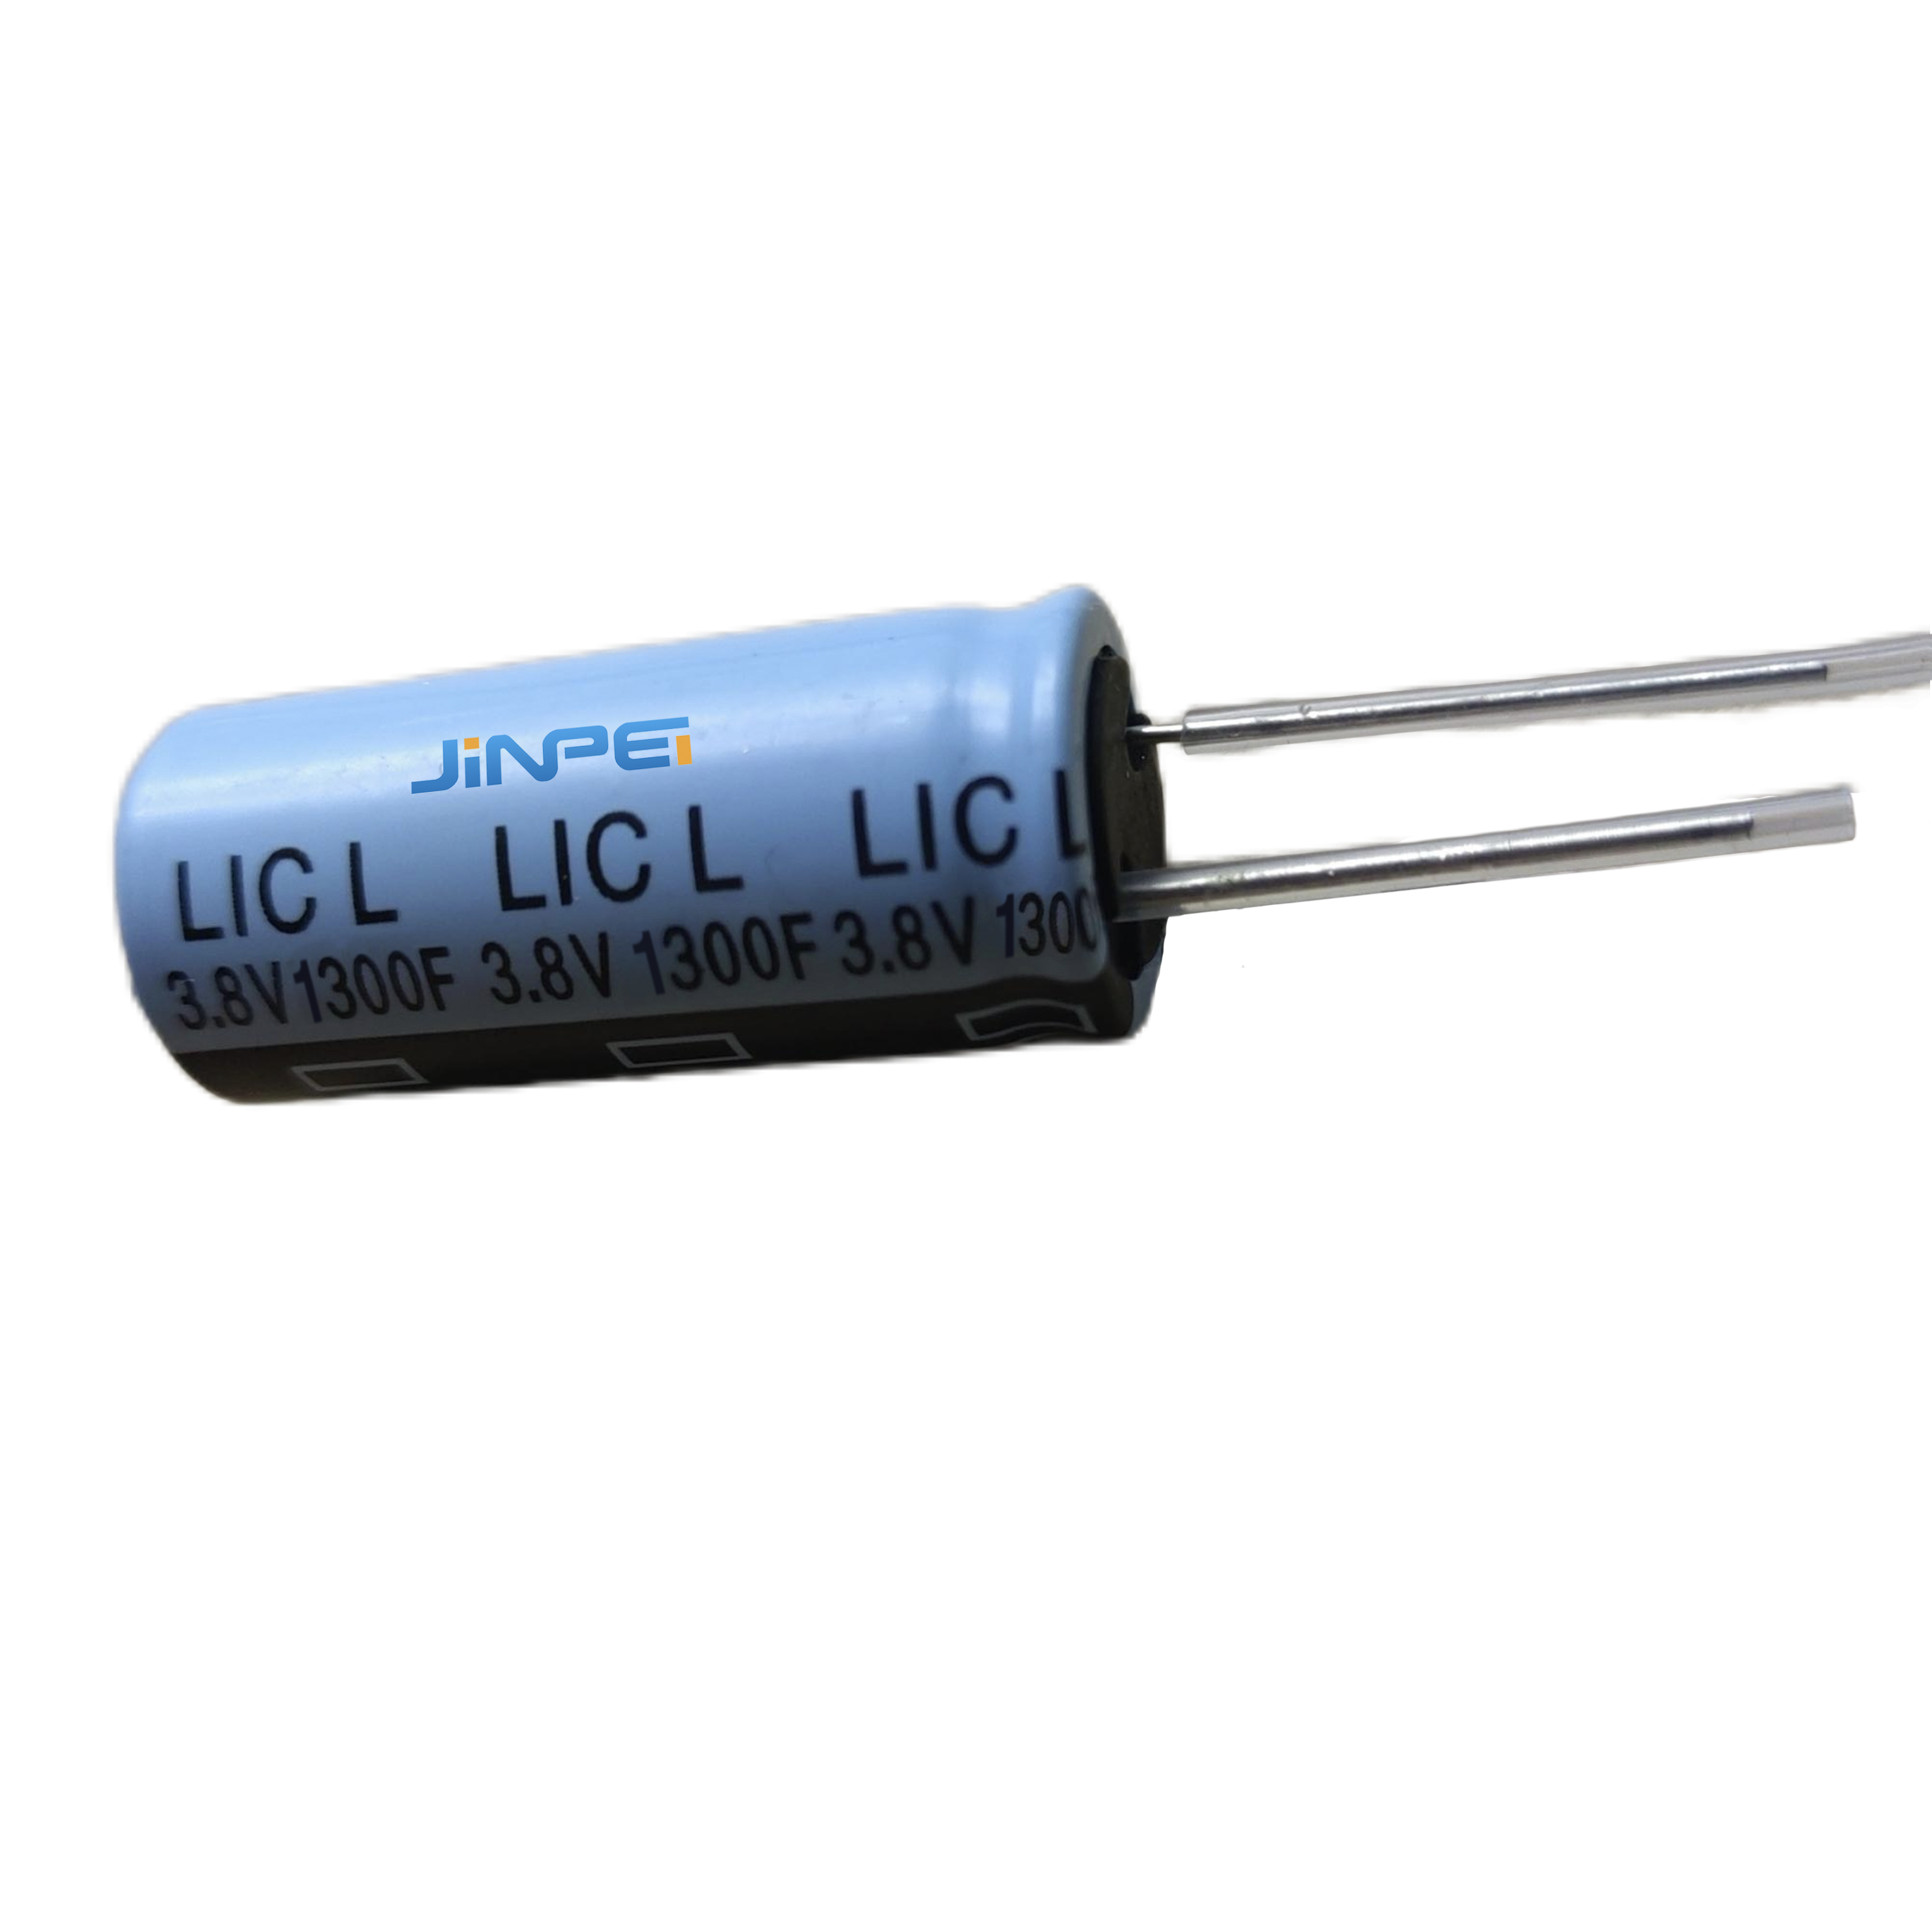 Литий-ионный конденсатор с радиальными выводами LIC 1300F